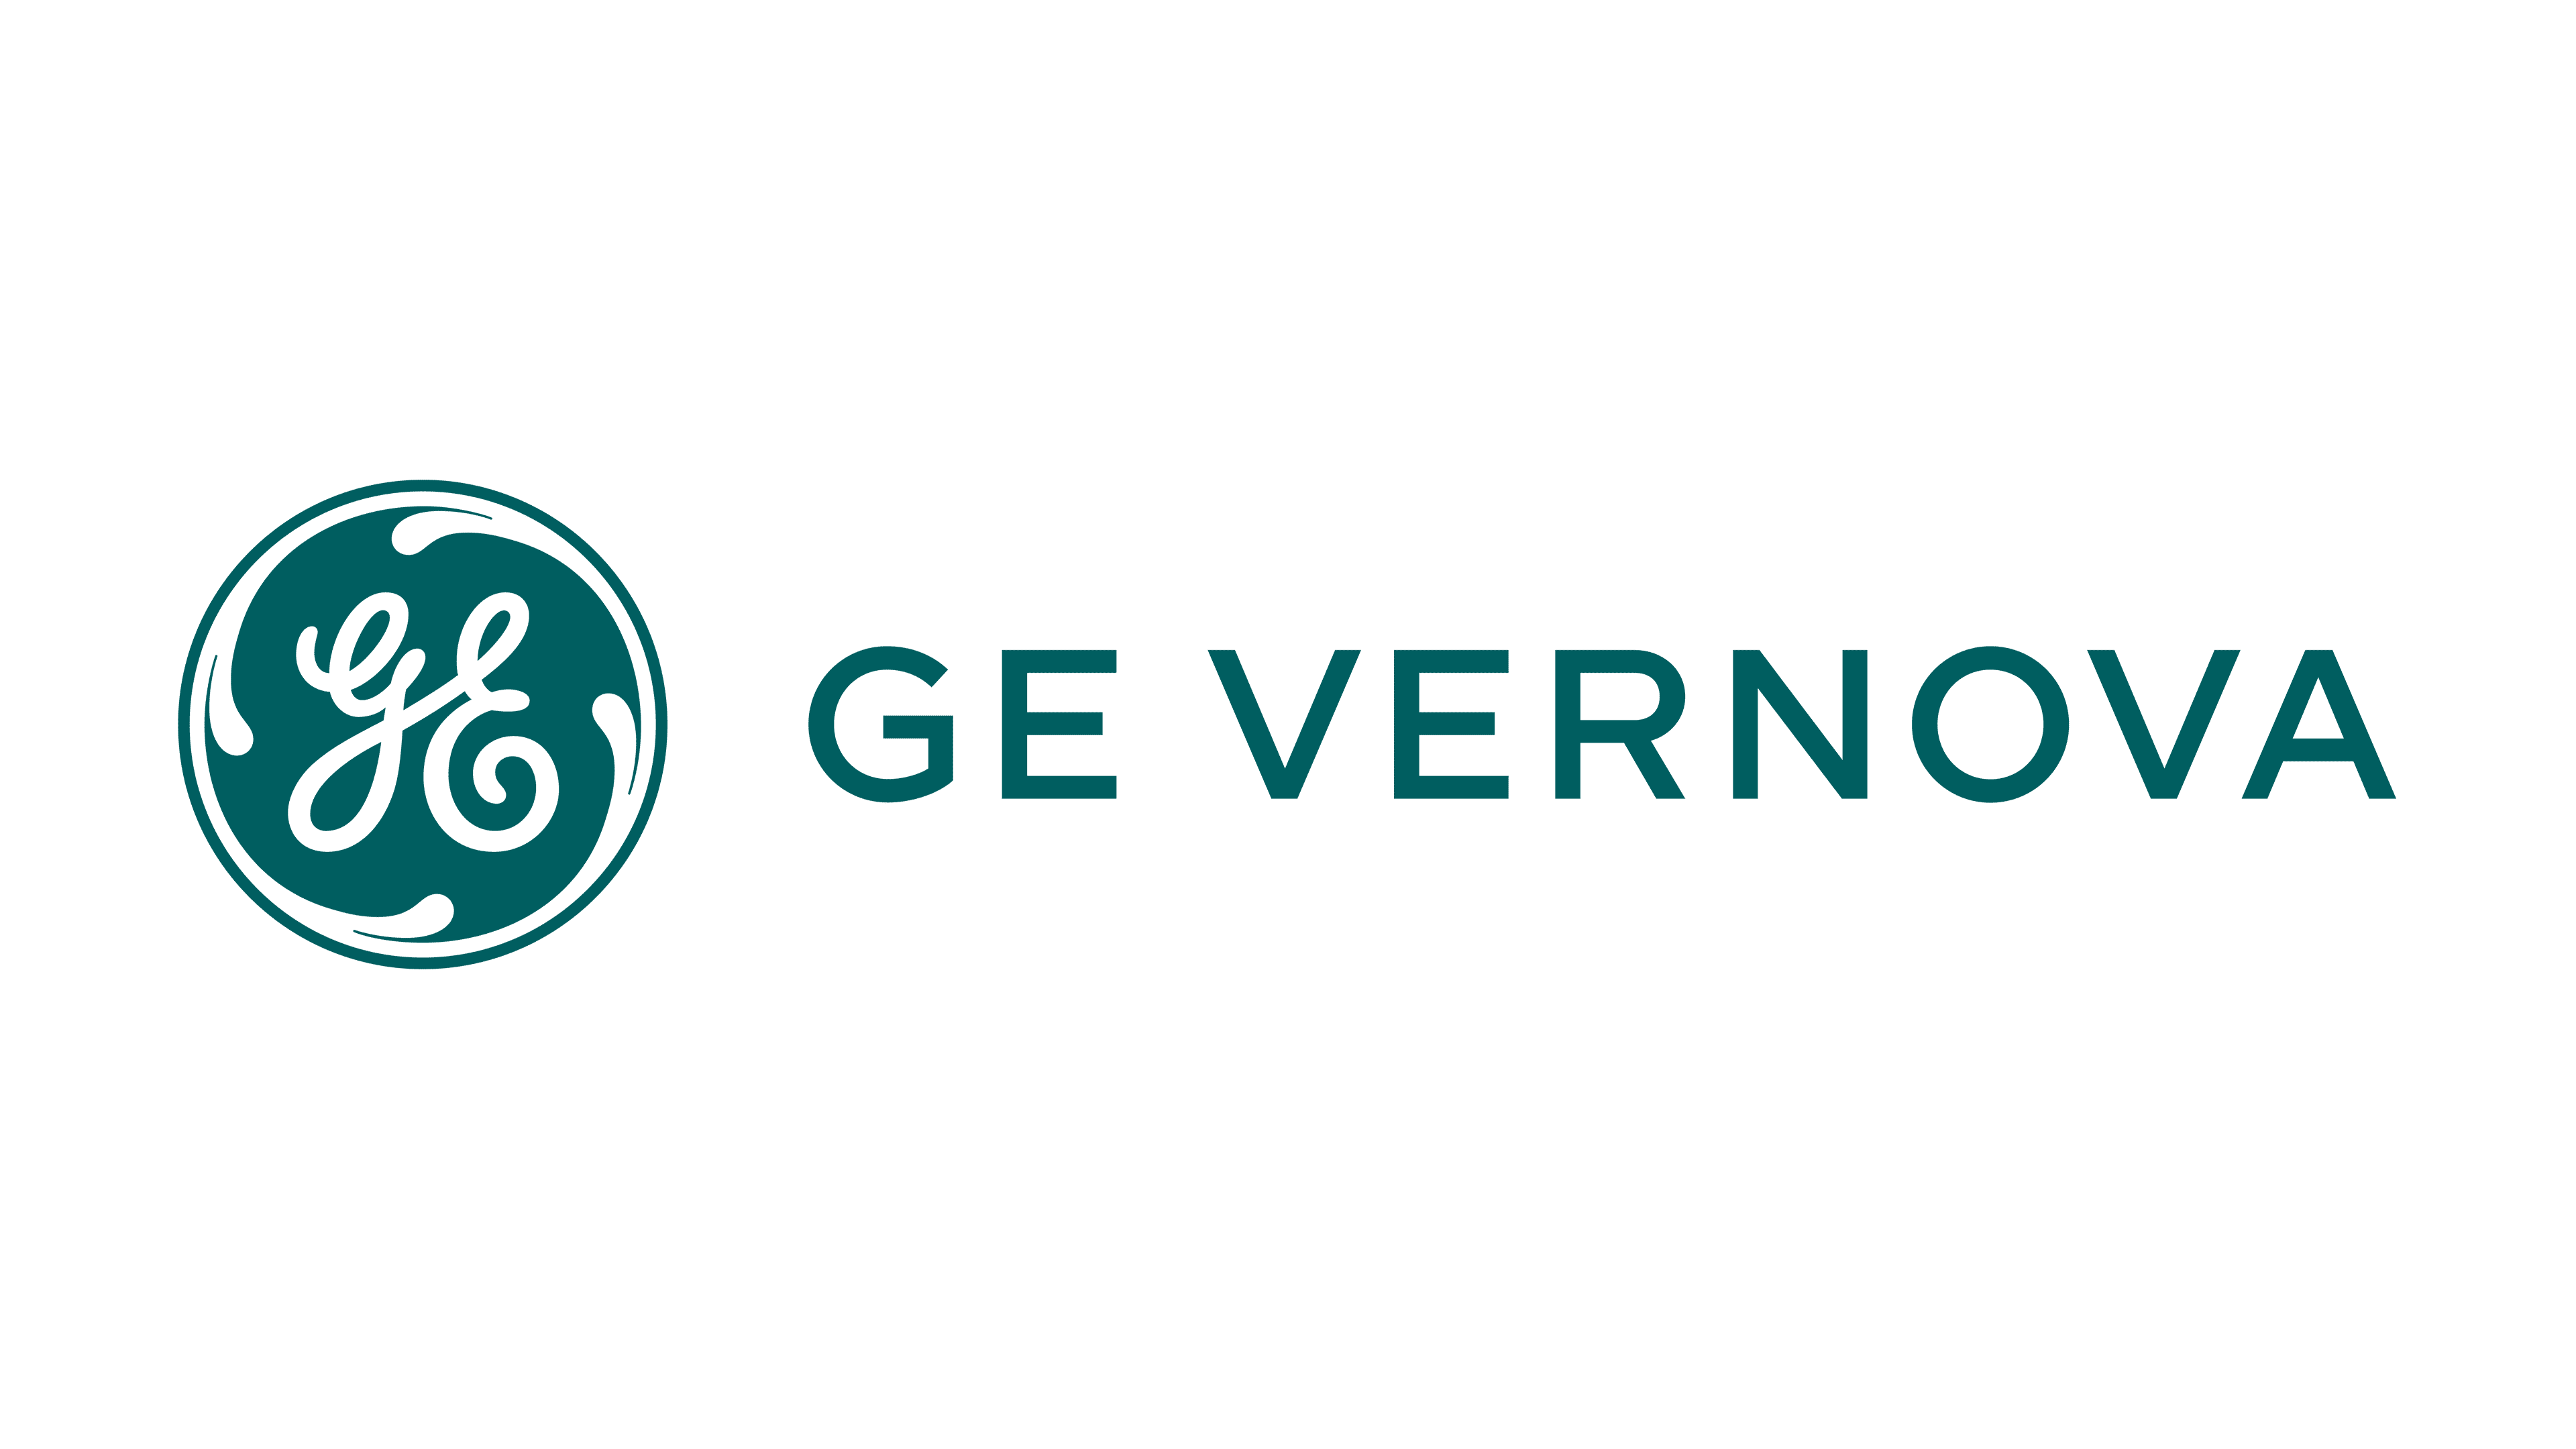 GE Vernova 